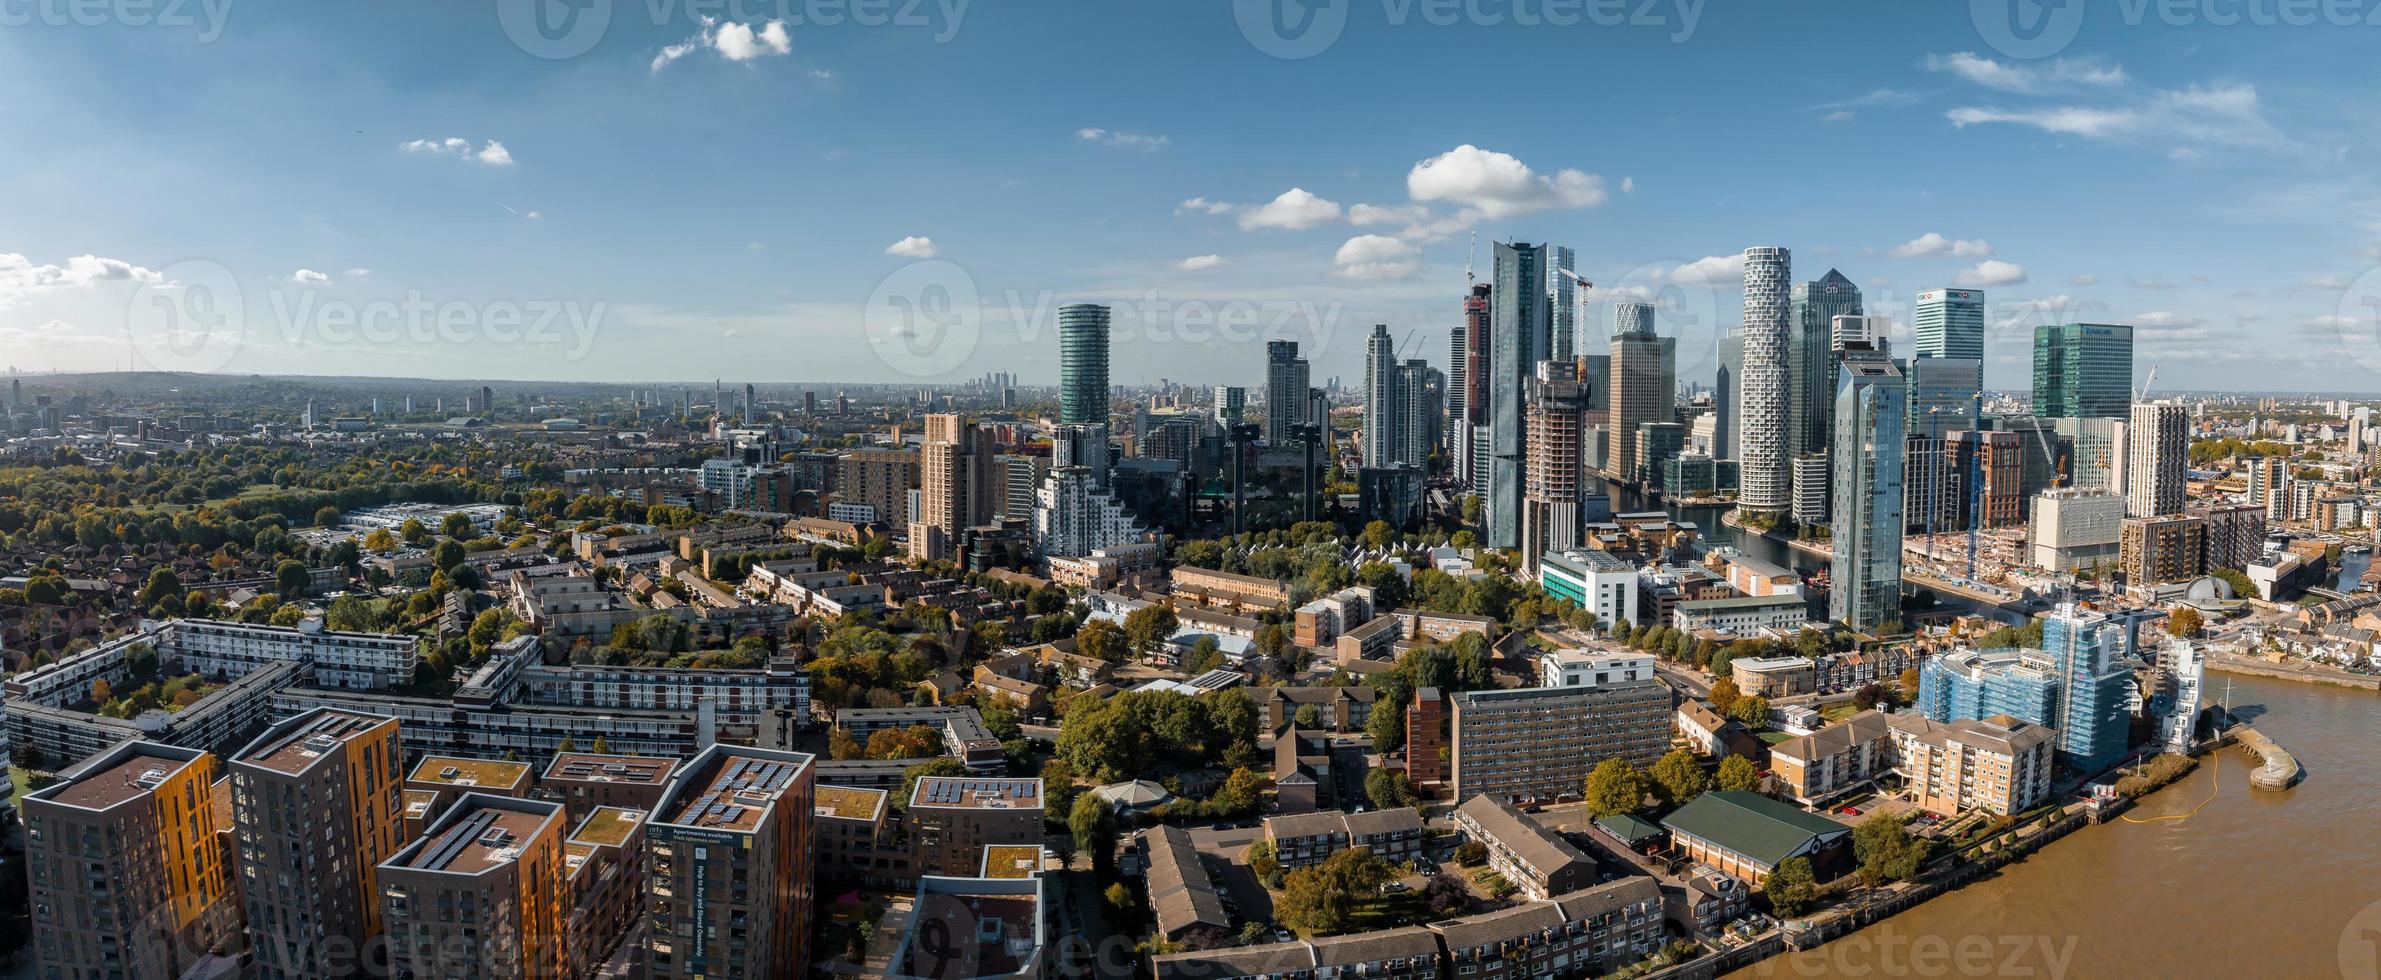 vue aérienne panoramique sur l'horizon de canary wharf, le premier quartier financier du monde à londres, royaume-uni. photo